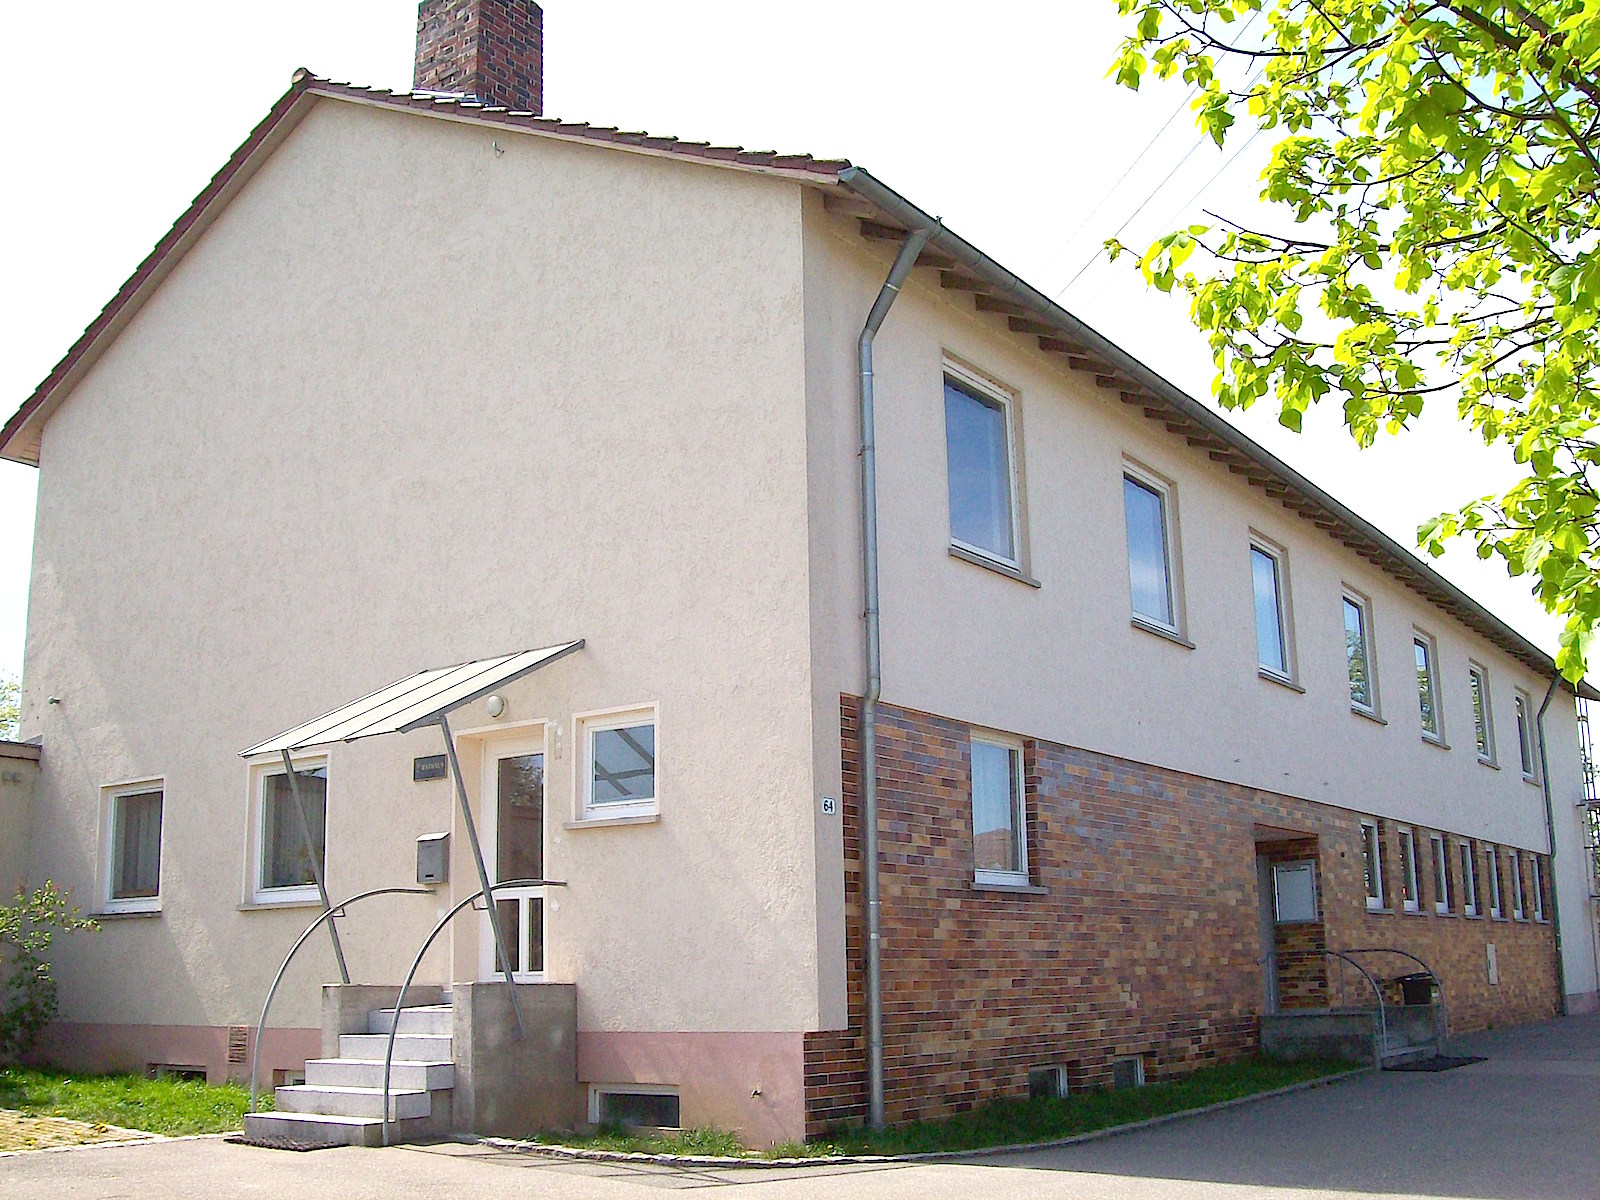 Dorfgemeinschaftshaus Weldingsfelden